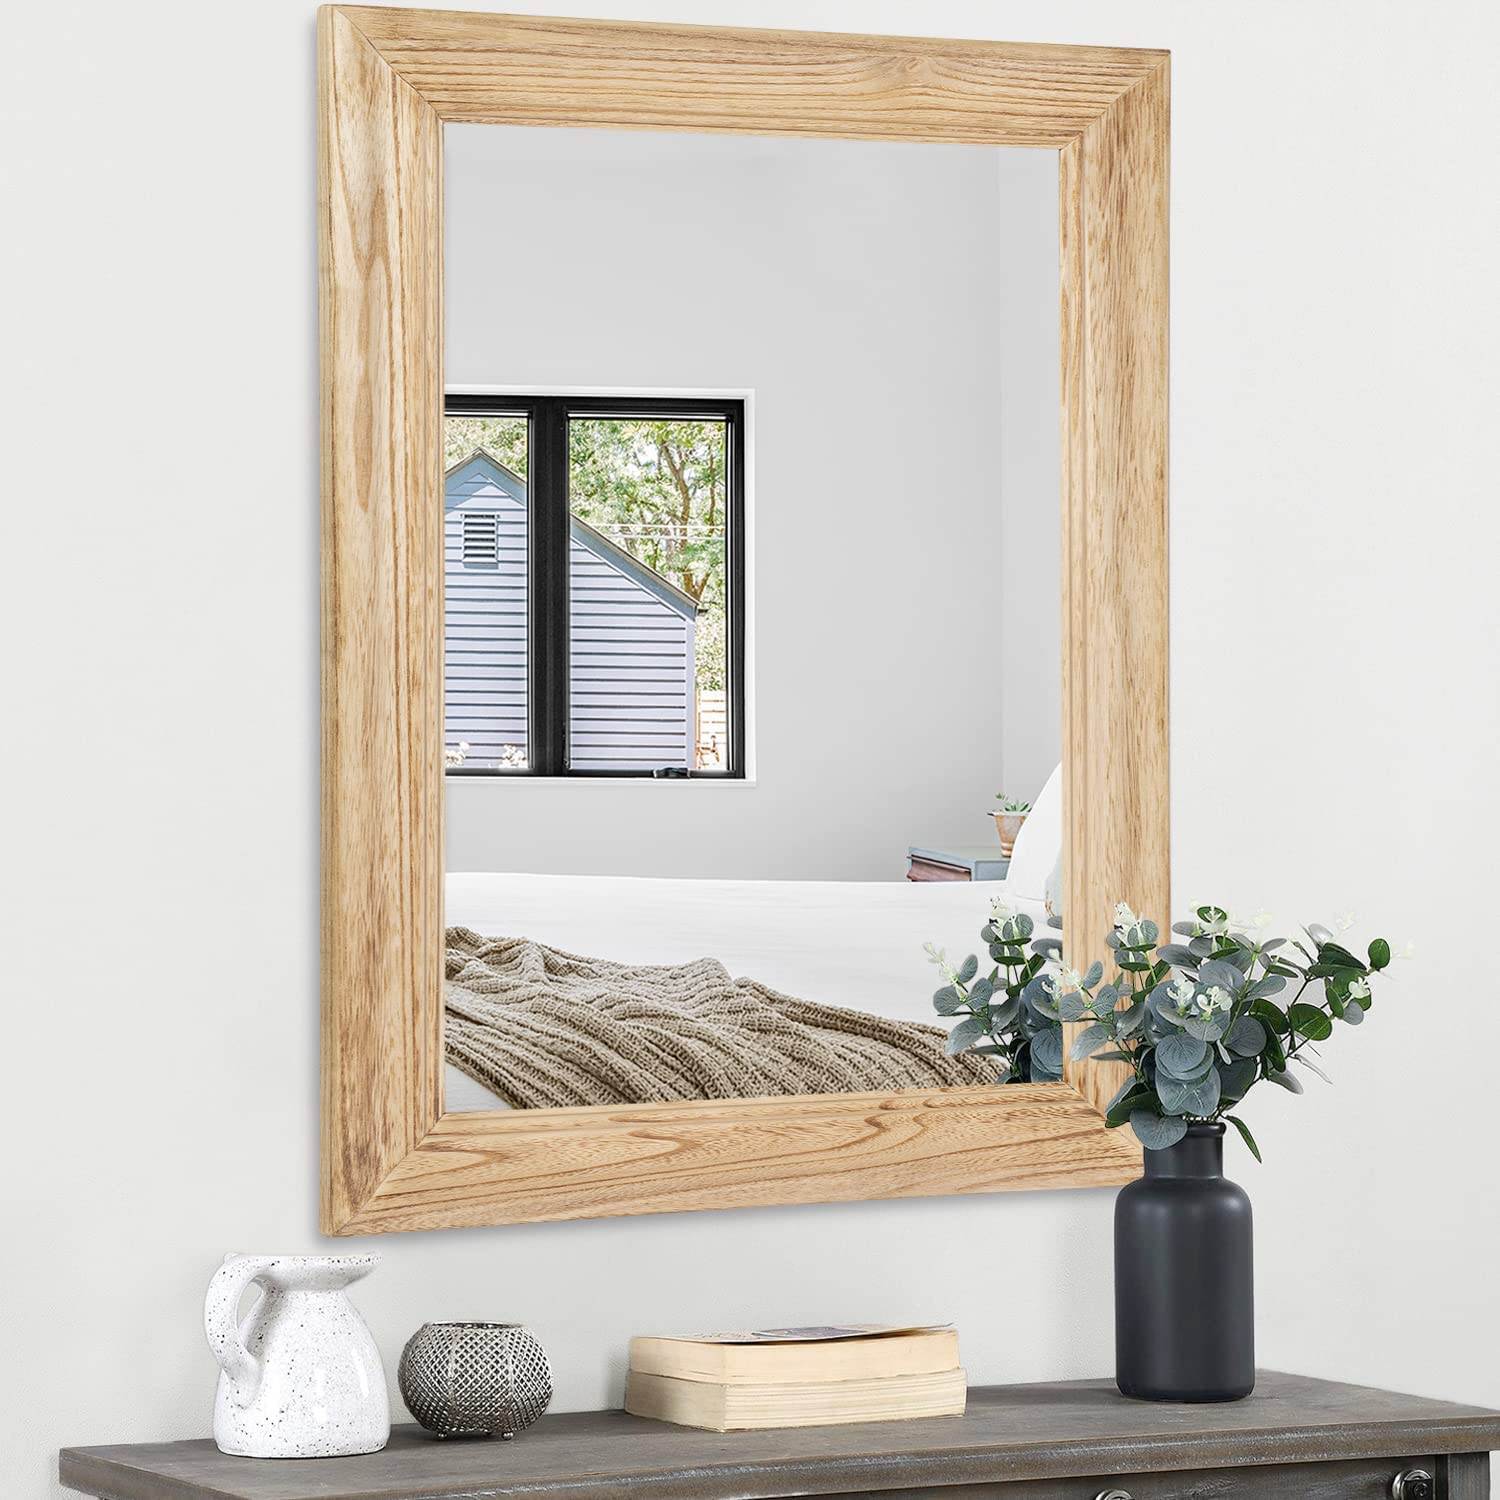 مرآة بإطار خشبي غير منزوعة الشكل، مستطيلة الشكل